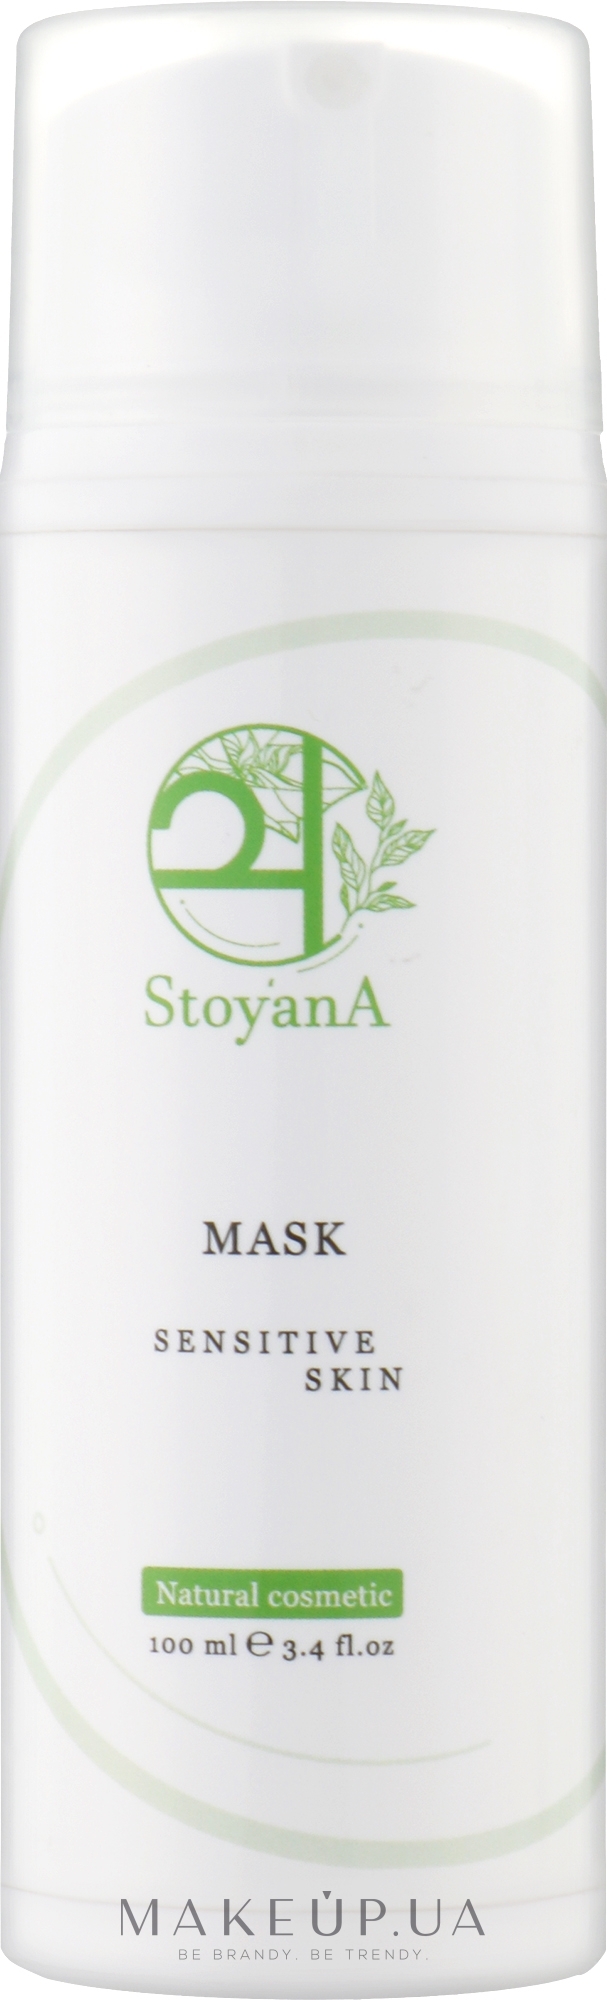 Заспокійлива, живильна маска для обличчя - StoyanA Mask Sensitive Skin — фото 100ml